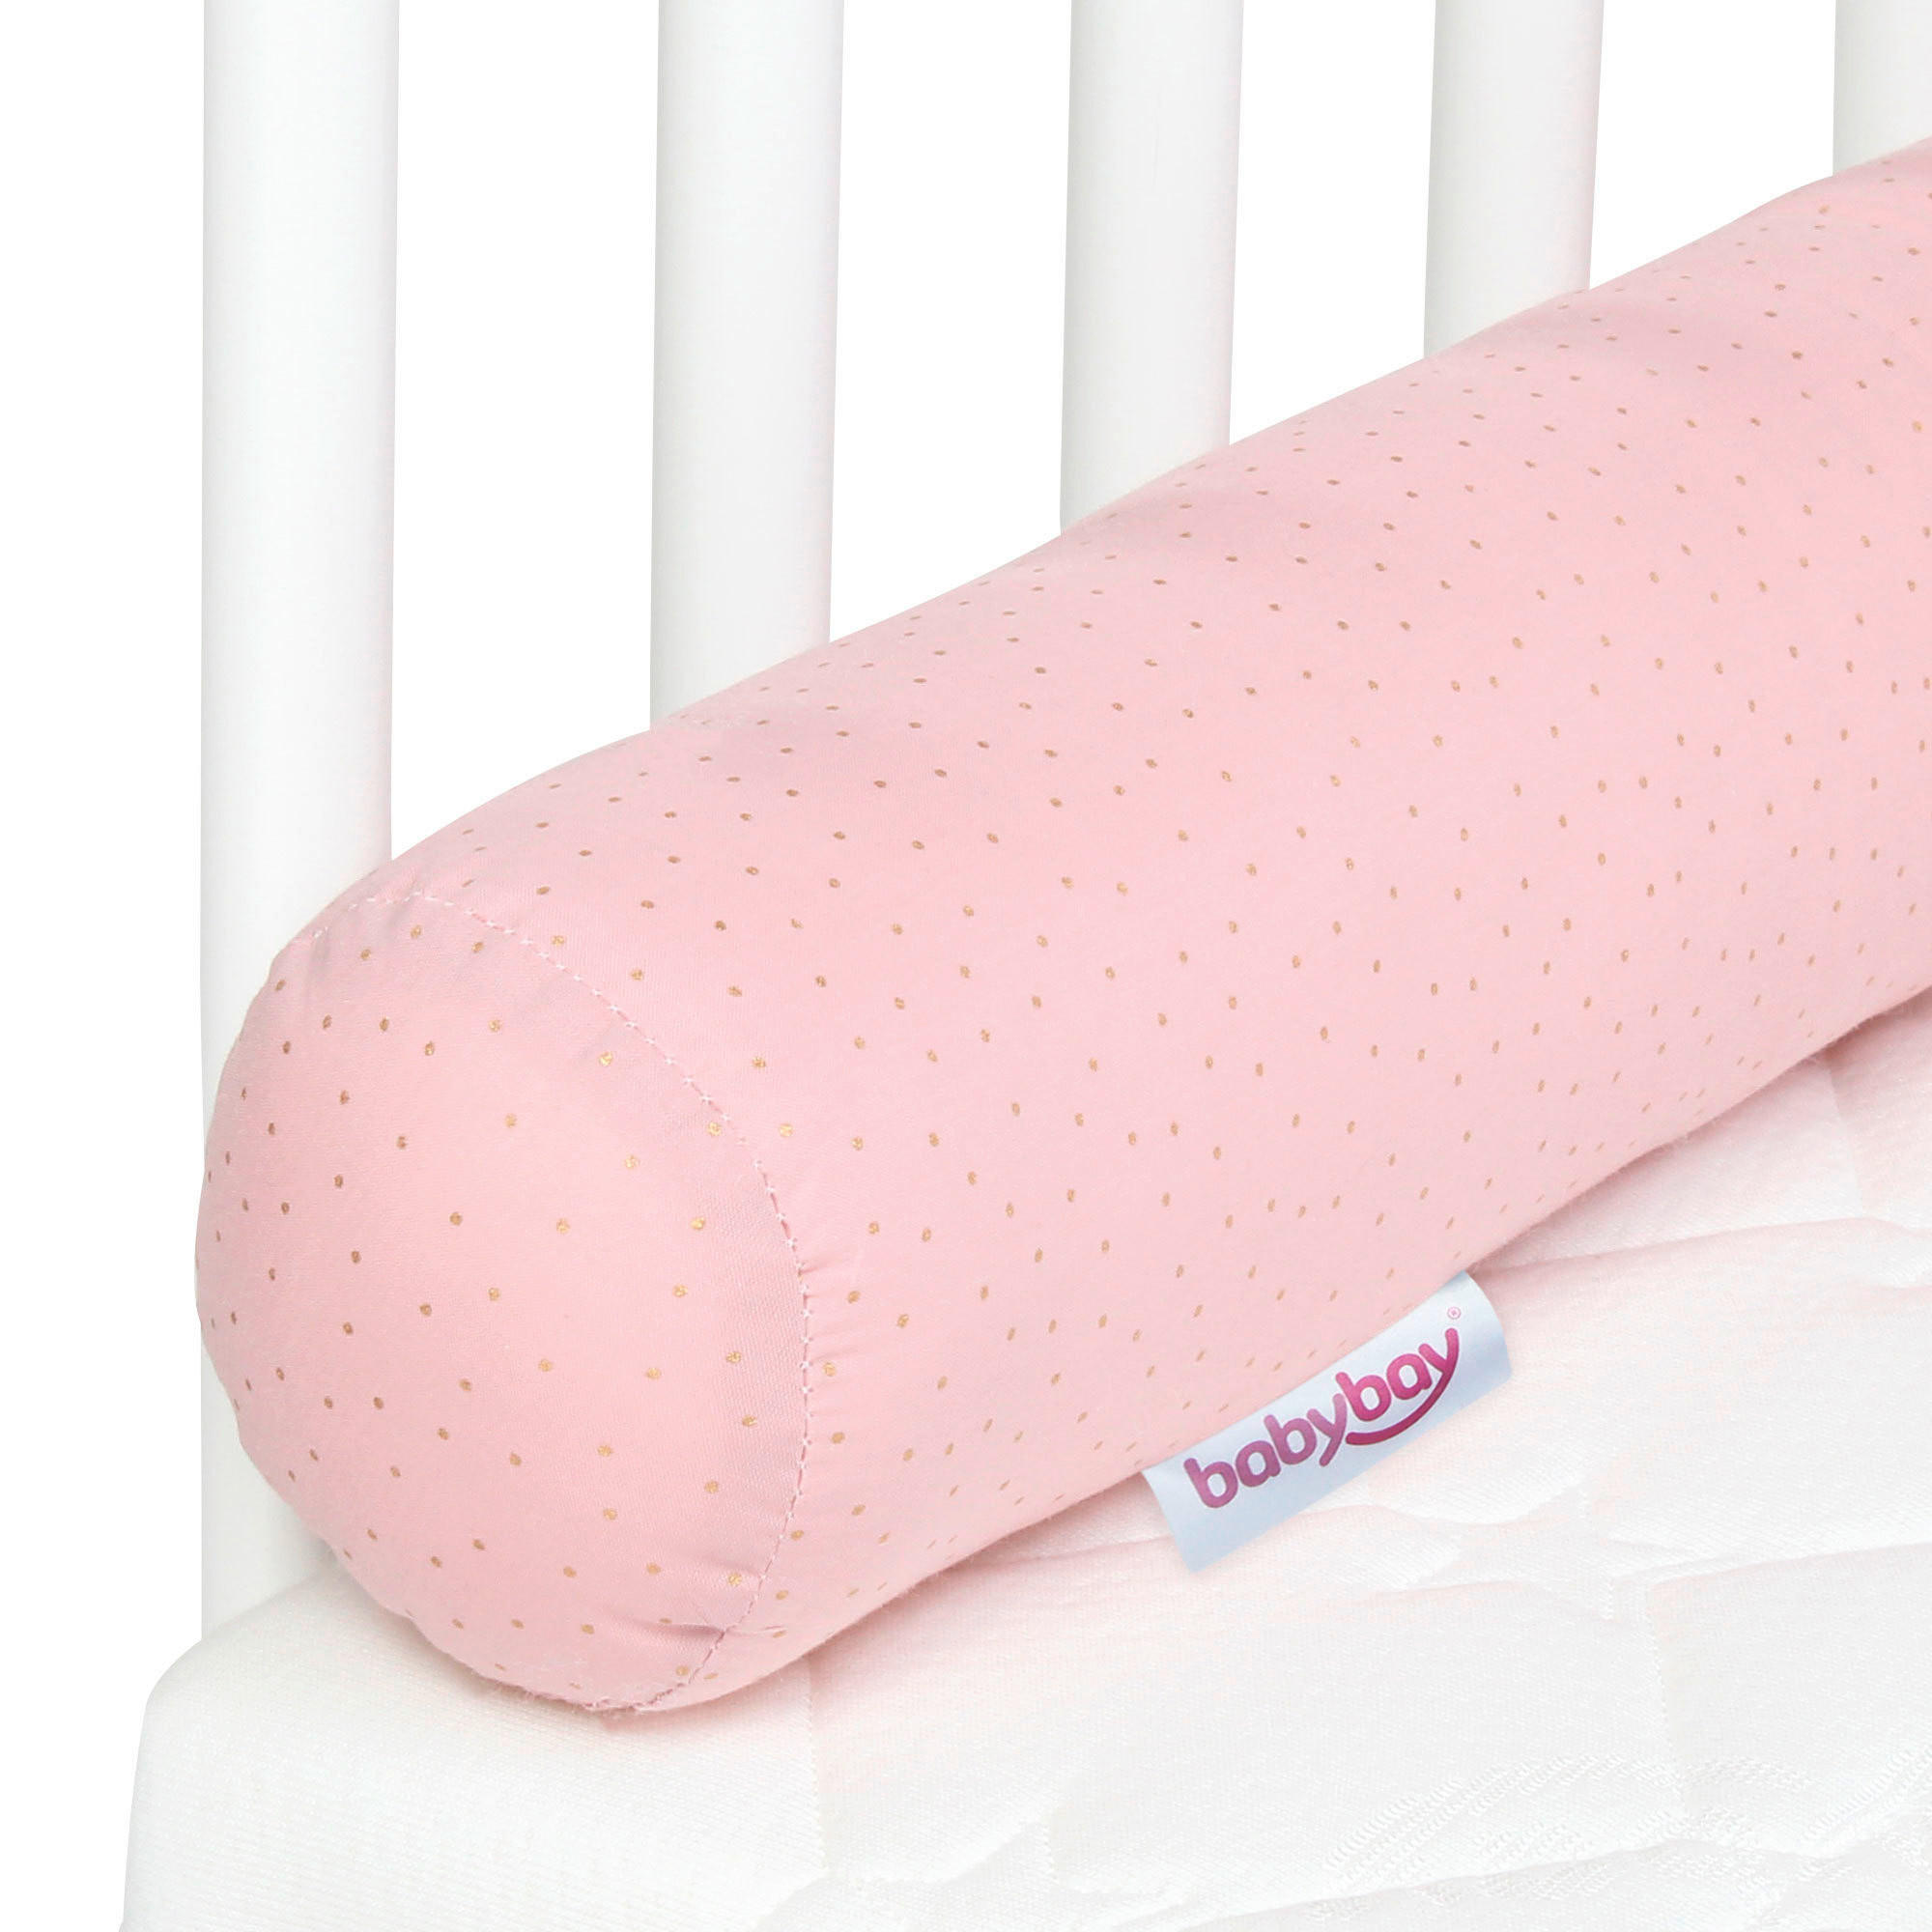 NESTCHENSCHLANGE BABY BAY  180/9/9 cm   - Rosa, Basics, Textil (180/9/9cm) - Babybay